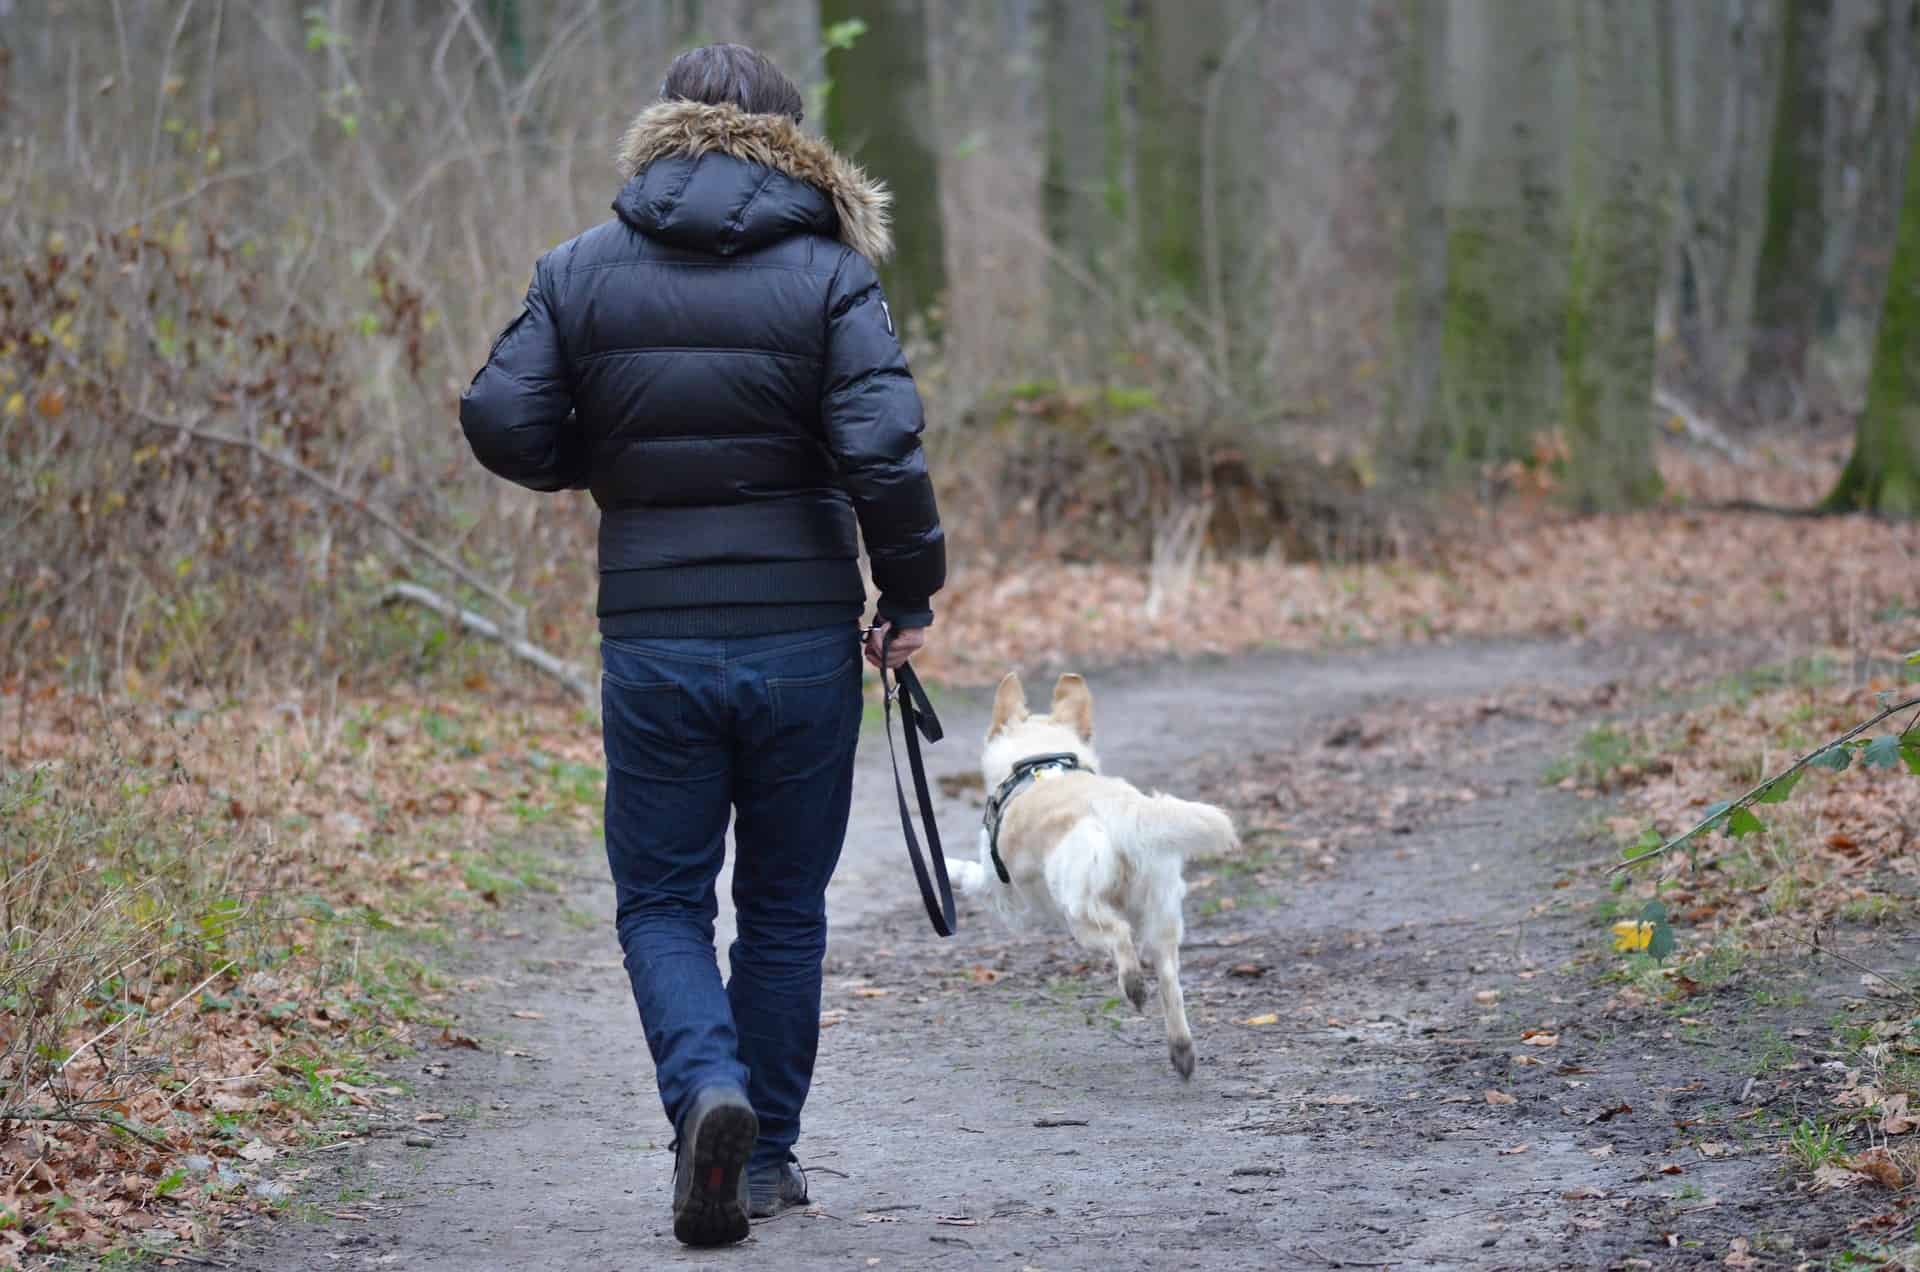 Menschenfreund auf vier Pfoten - sind Hunde gut für die Gesundheit? Hund und Mensch spazieren durch den Wald. Hund im Freilauf. /Foto: Tom und Nicki Löschner (pixabay)